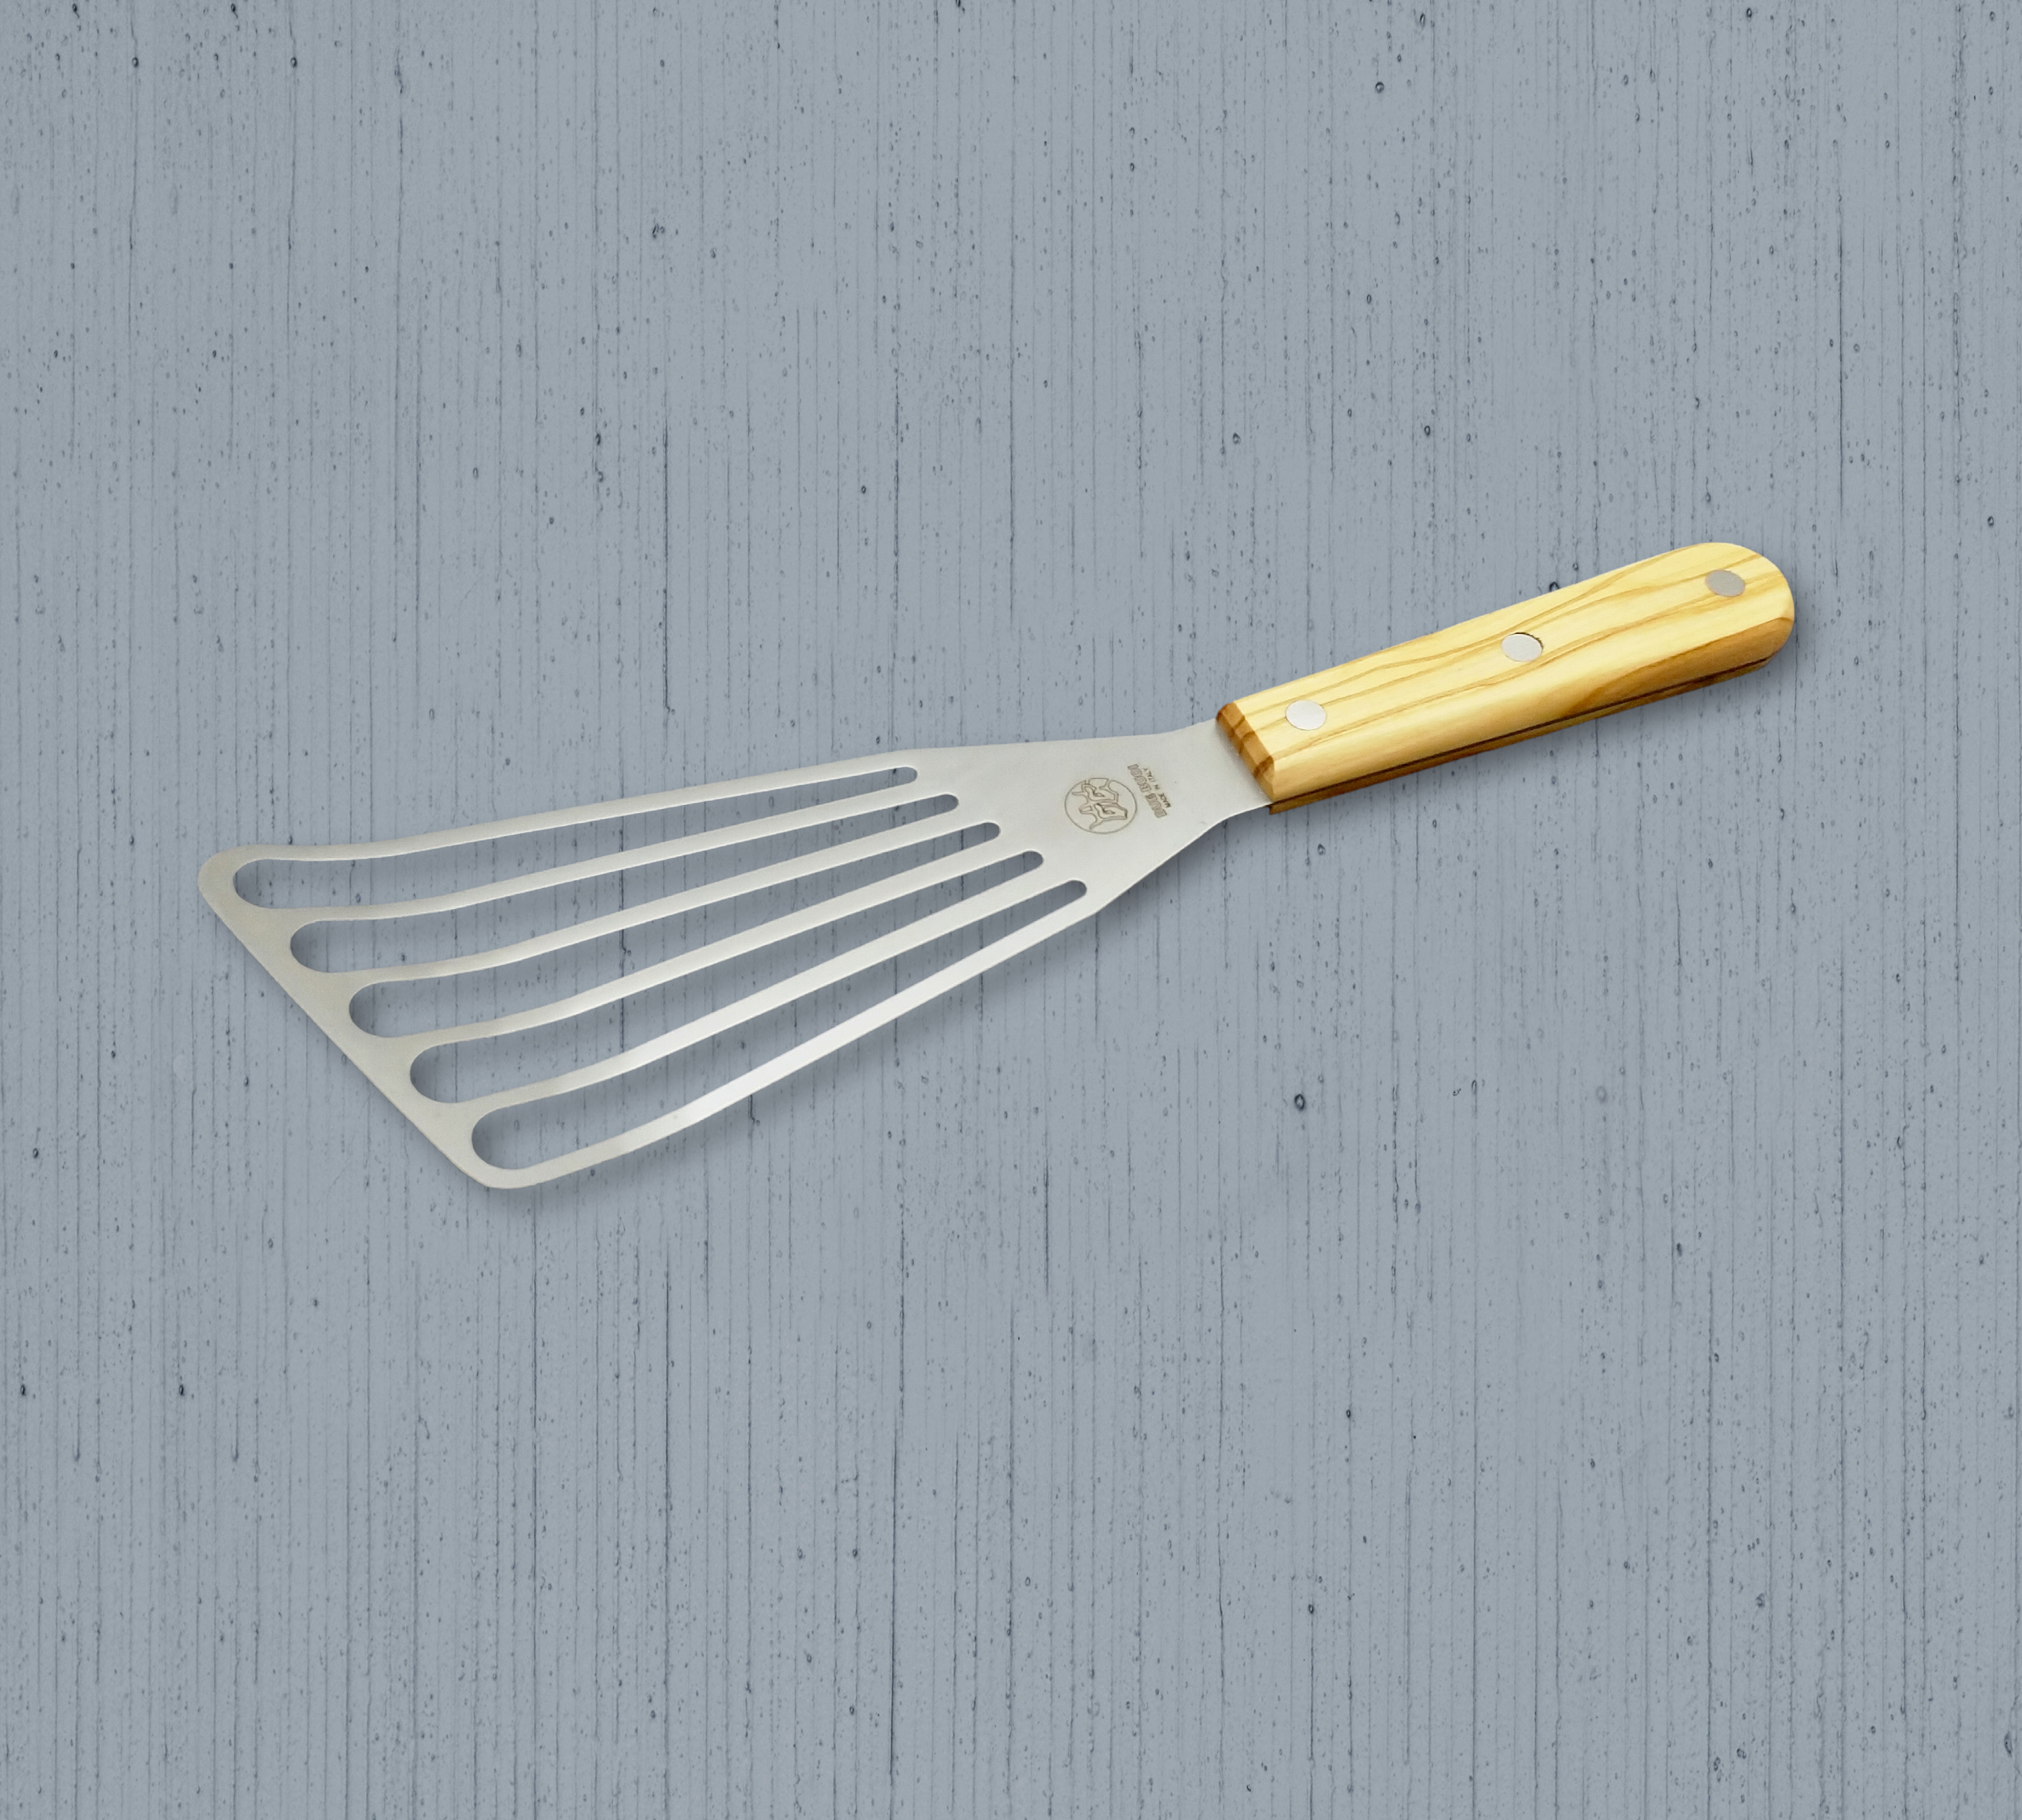 https://www.duebuoiknives.it/files/k4vlex/flexible_turner_spatula_olive_wood_handle.jpg